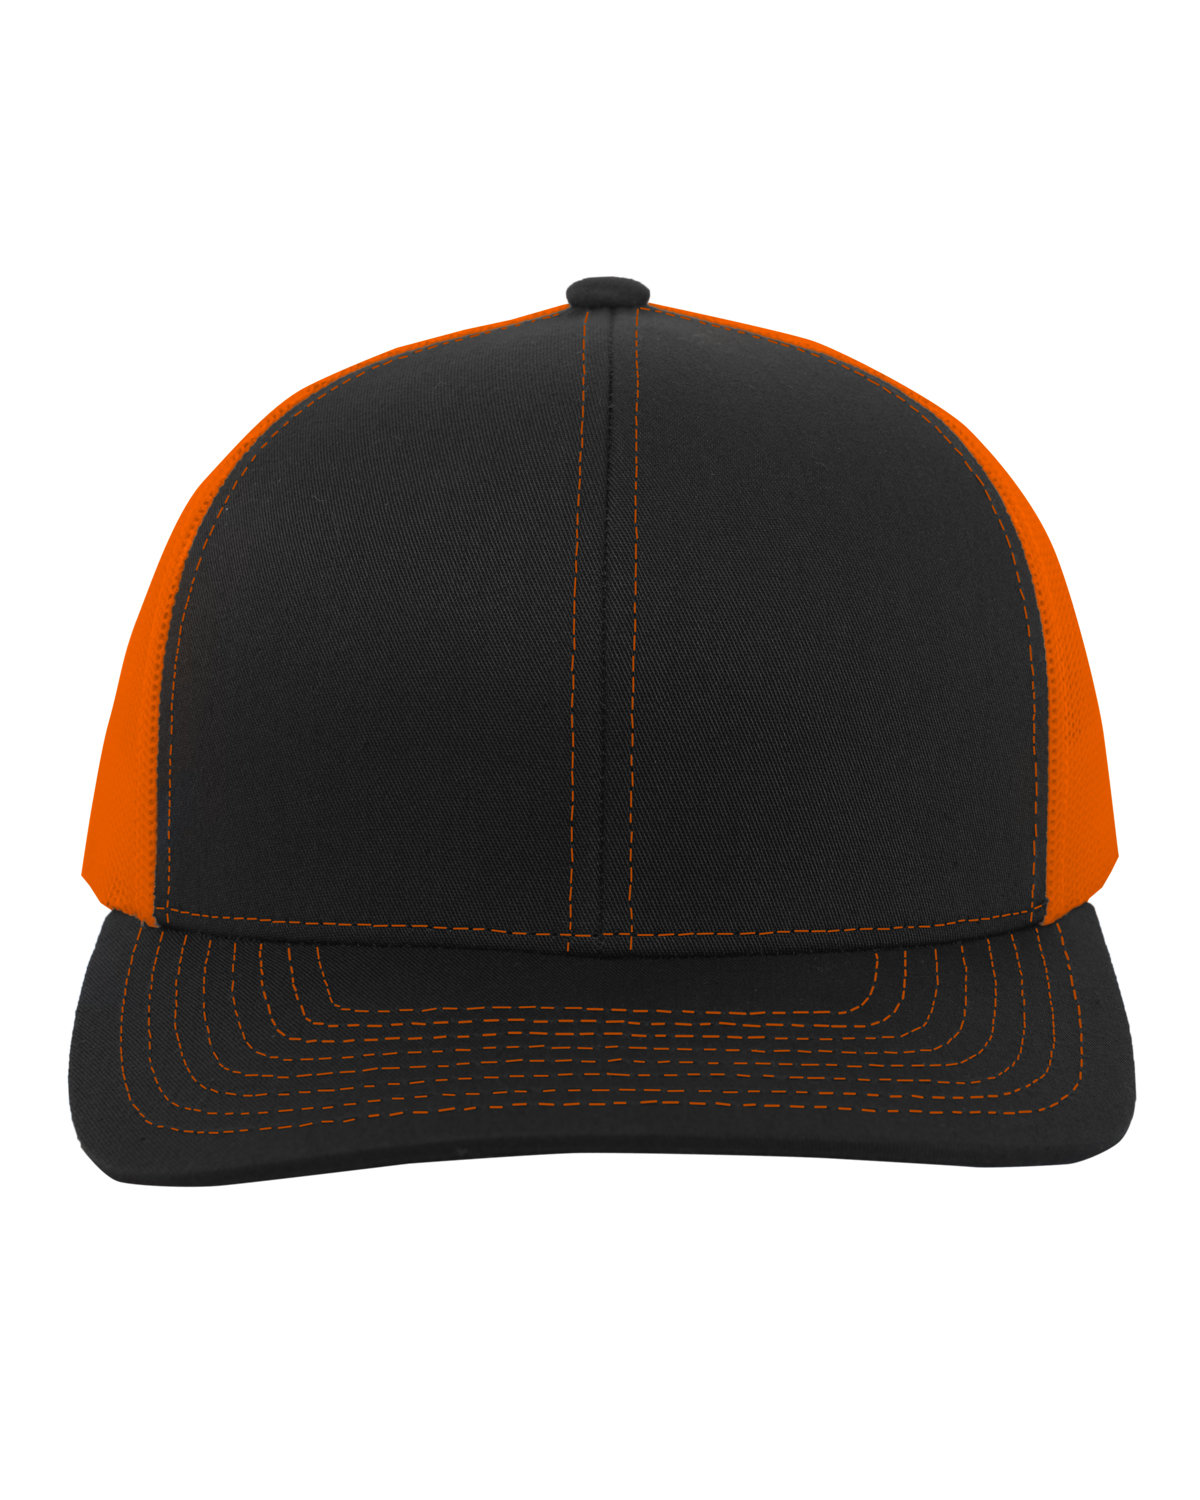 Pacific Headwear Trucker Snapback Hat BLACK/ NEON ORNG 